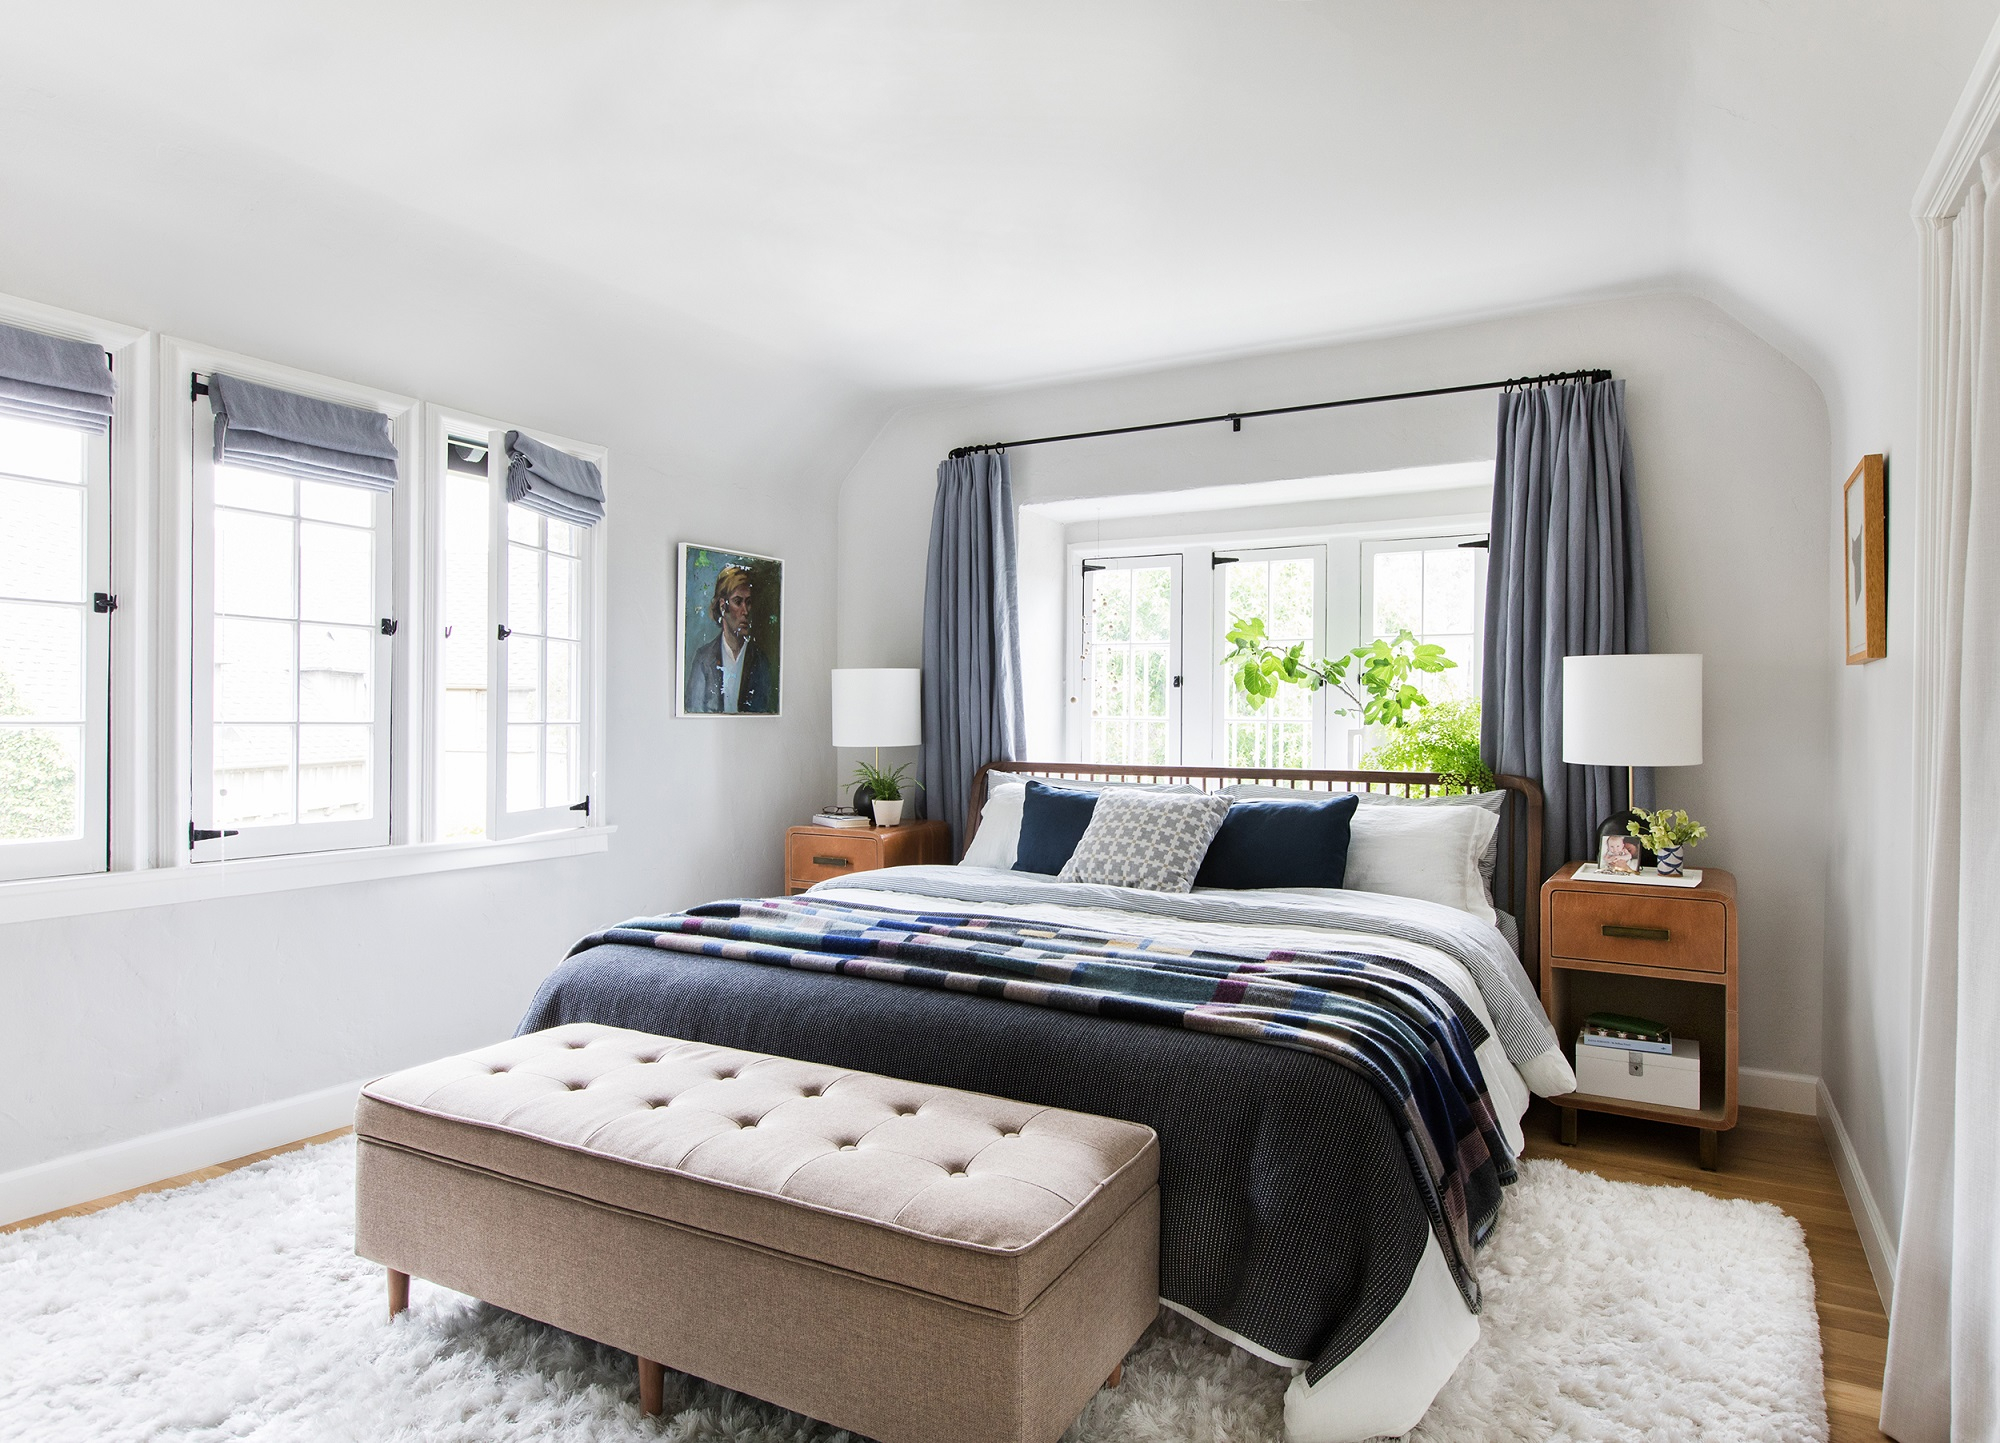 19 Blissful Bedroom Color Scheme Ideas The Luxpad regarding measurements 2000 X 1443